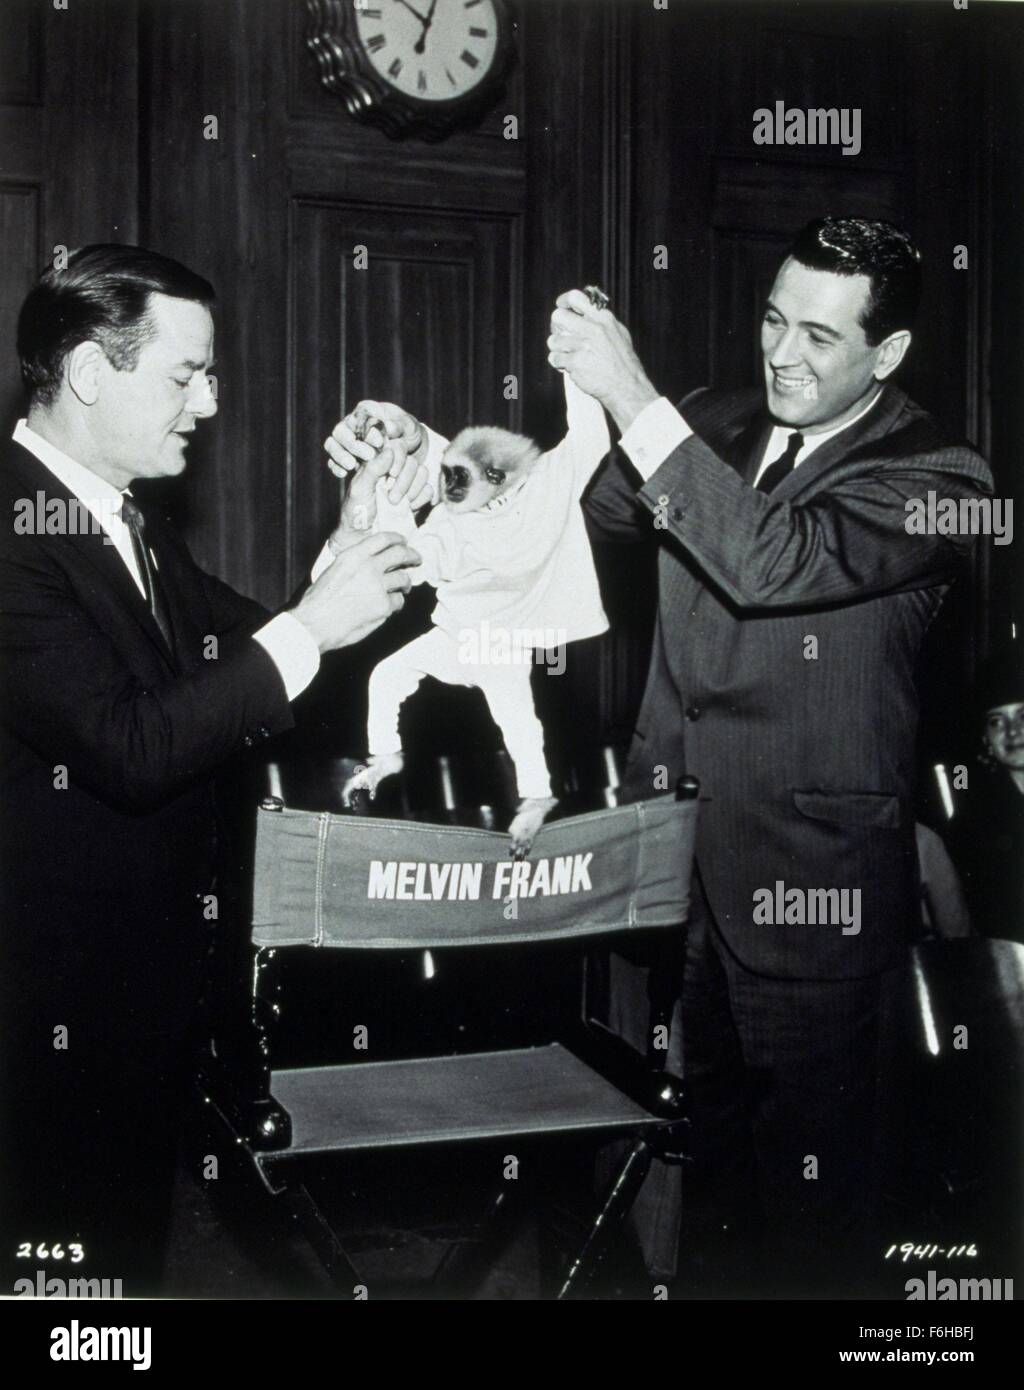 1964, il titolo del film: strani BEDFELLOWS, Direttore: MELVIN FRANK, nella foto: Animali (con attori), MELVIN FRANK, Rock Hudson, scimmia (gibbone). (Credito Immagine: SNAP) Foto Stock